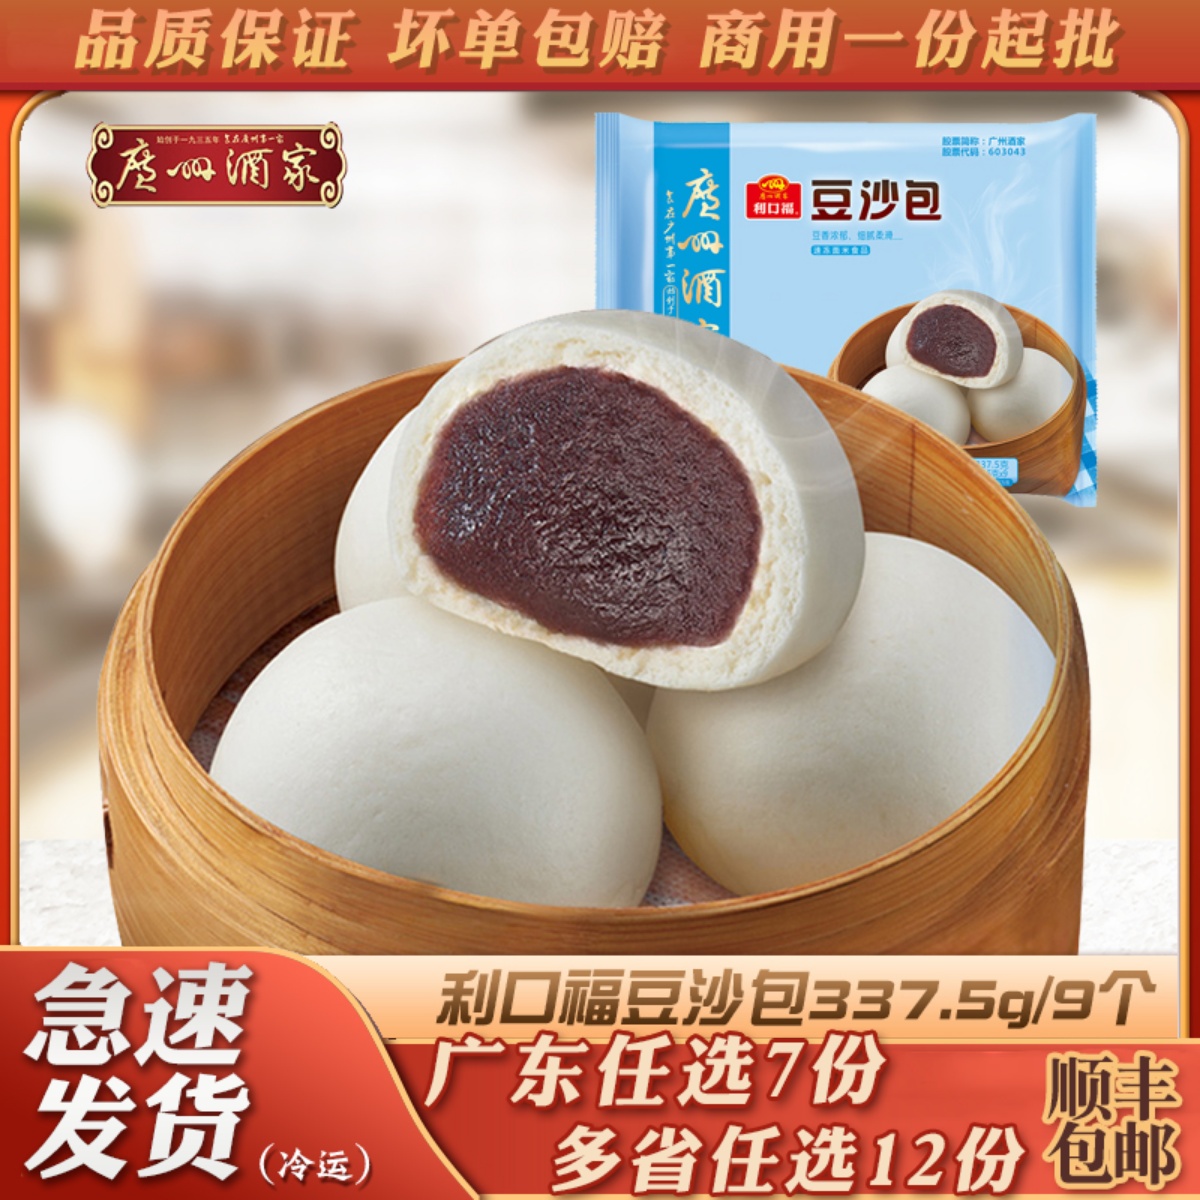 广州酒家 利口福豆沙包337.5g港式点心速冻食品半成品冷冻红豆包子